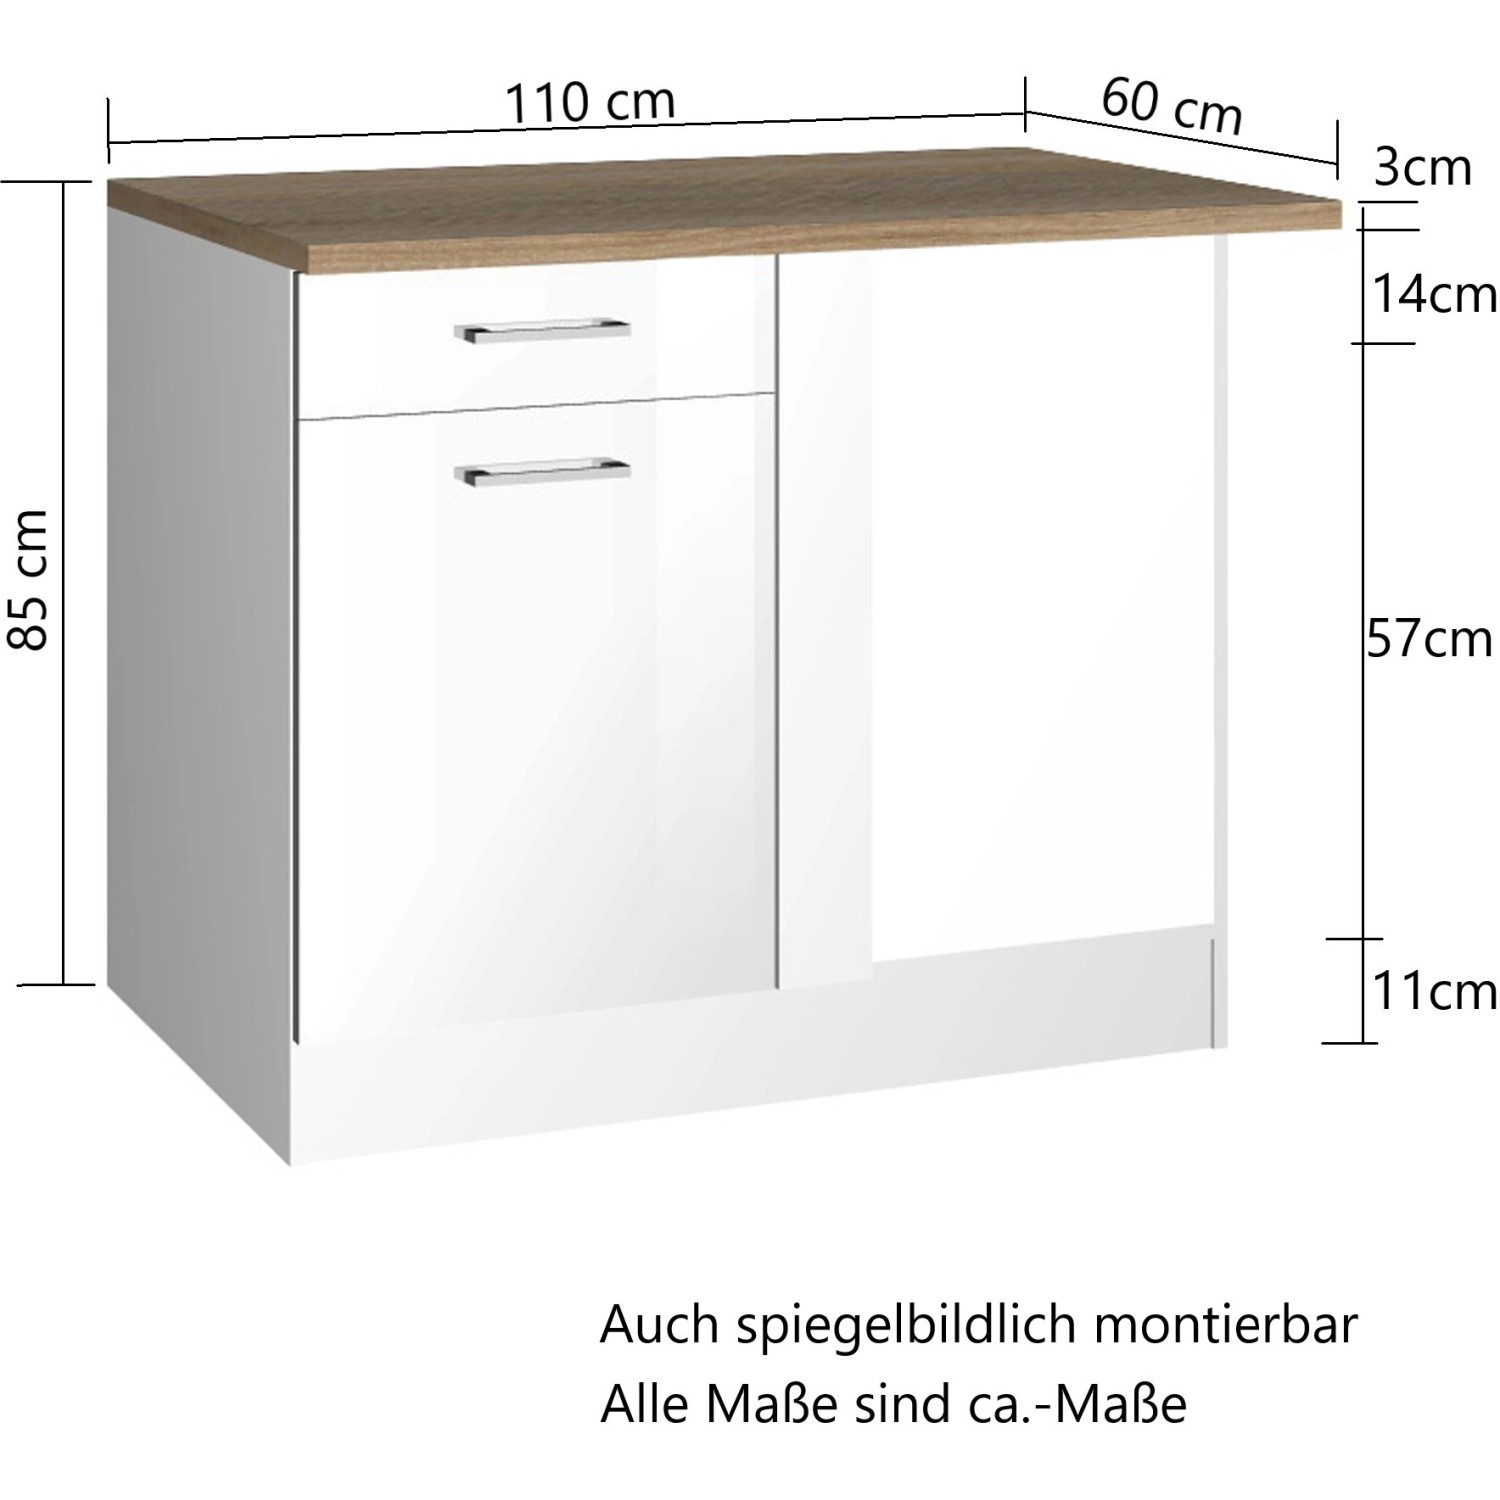 Held Möbel Küchen-Eckschrank OBI kaufen cm Mailand bei Hochglanz Graphit/Graphit 110